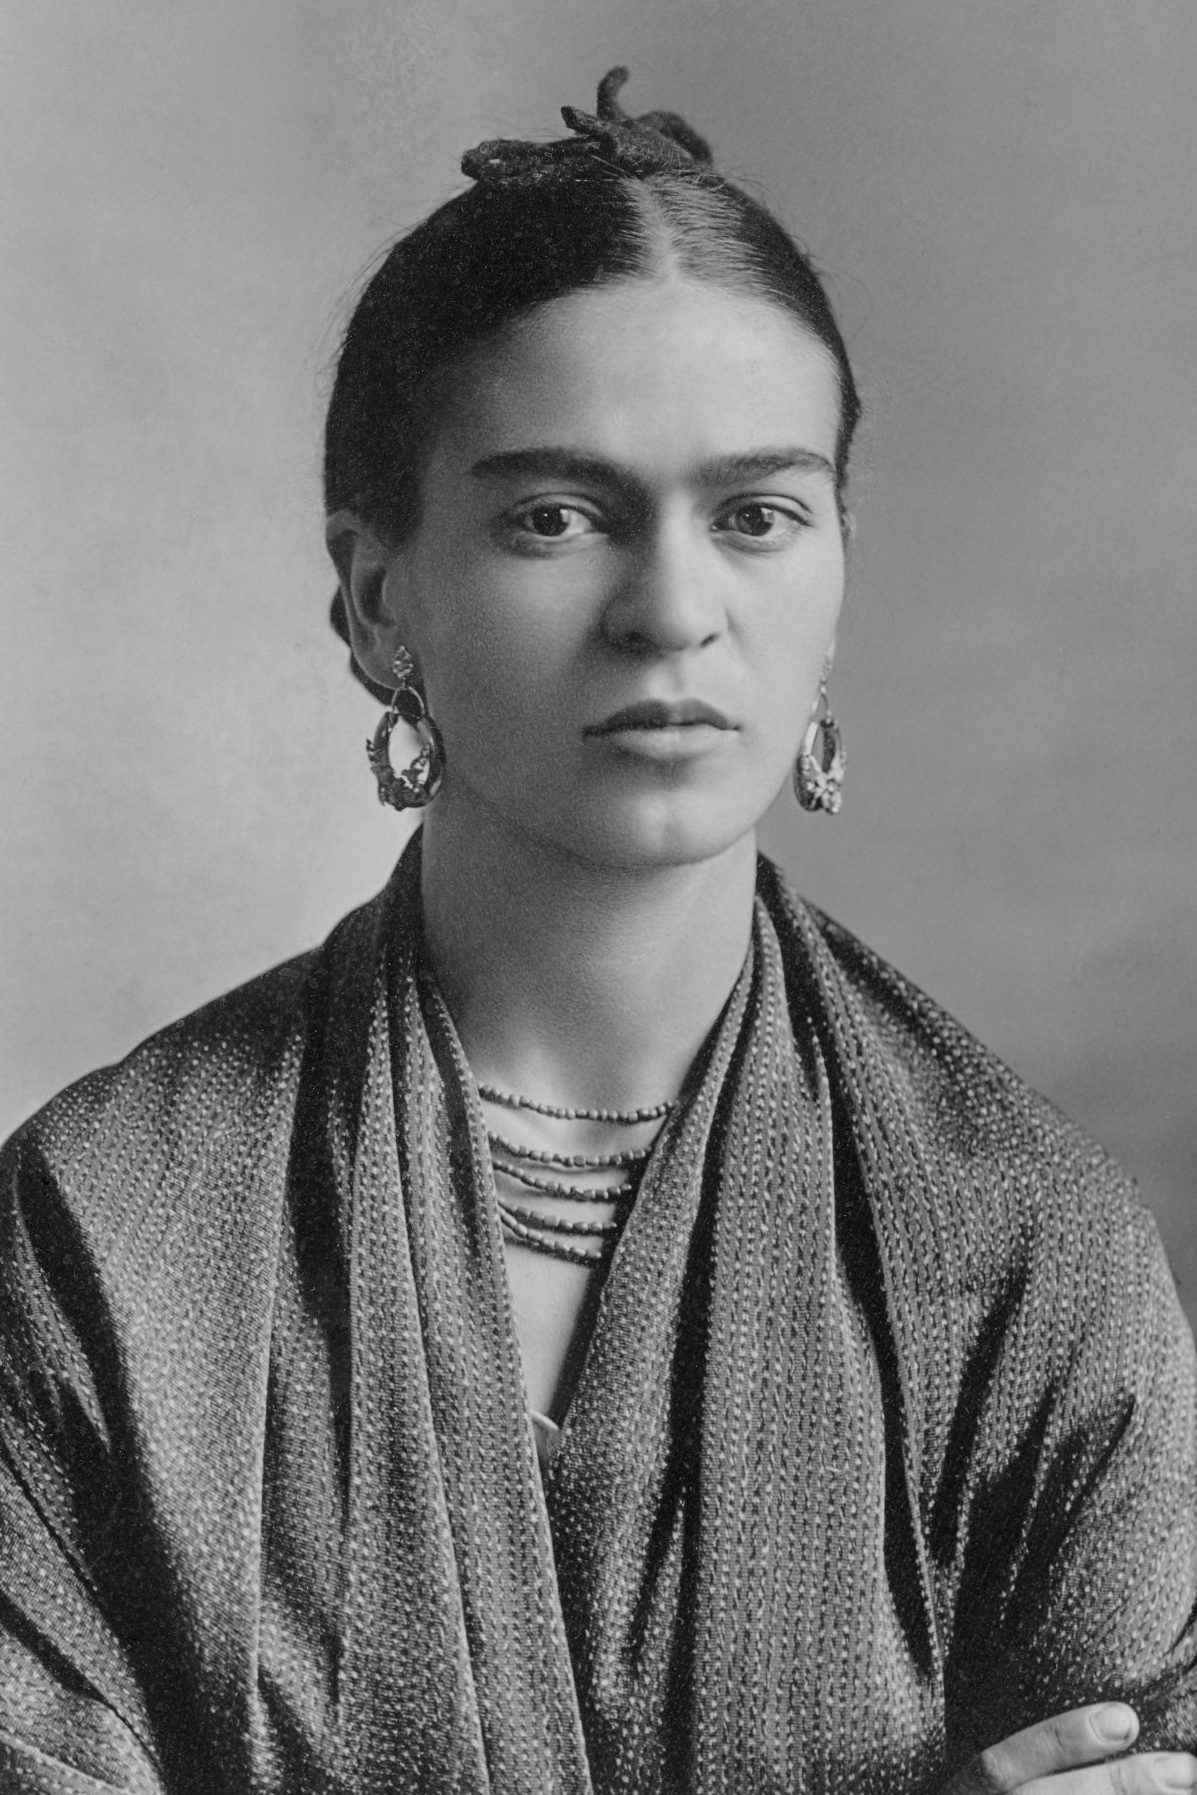 auteur Frida Kahlo de la citation Peut-on inventer des verbes? Je veux vous en dire un: je vous cache, donc mes ailes s'étendent si grandes de vous aimer sans mesure.